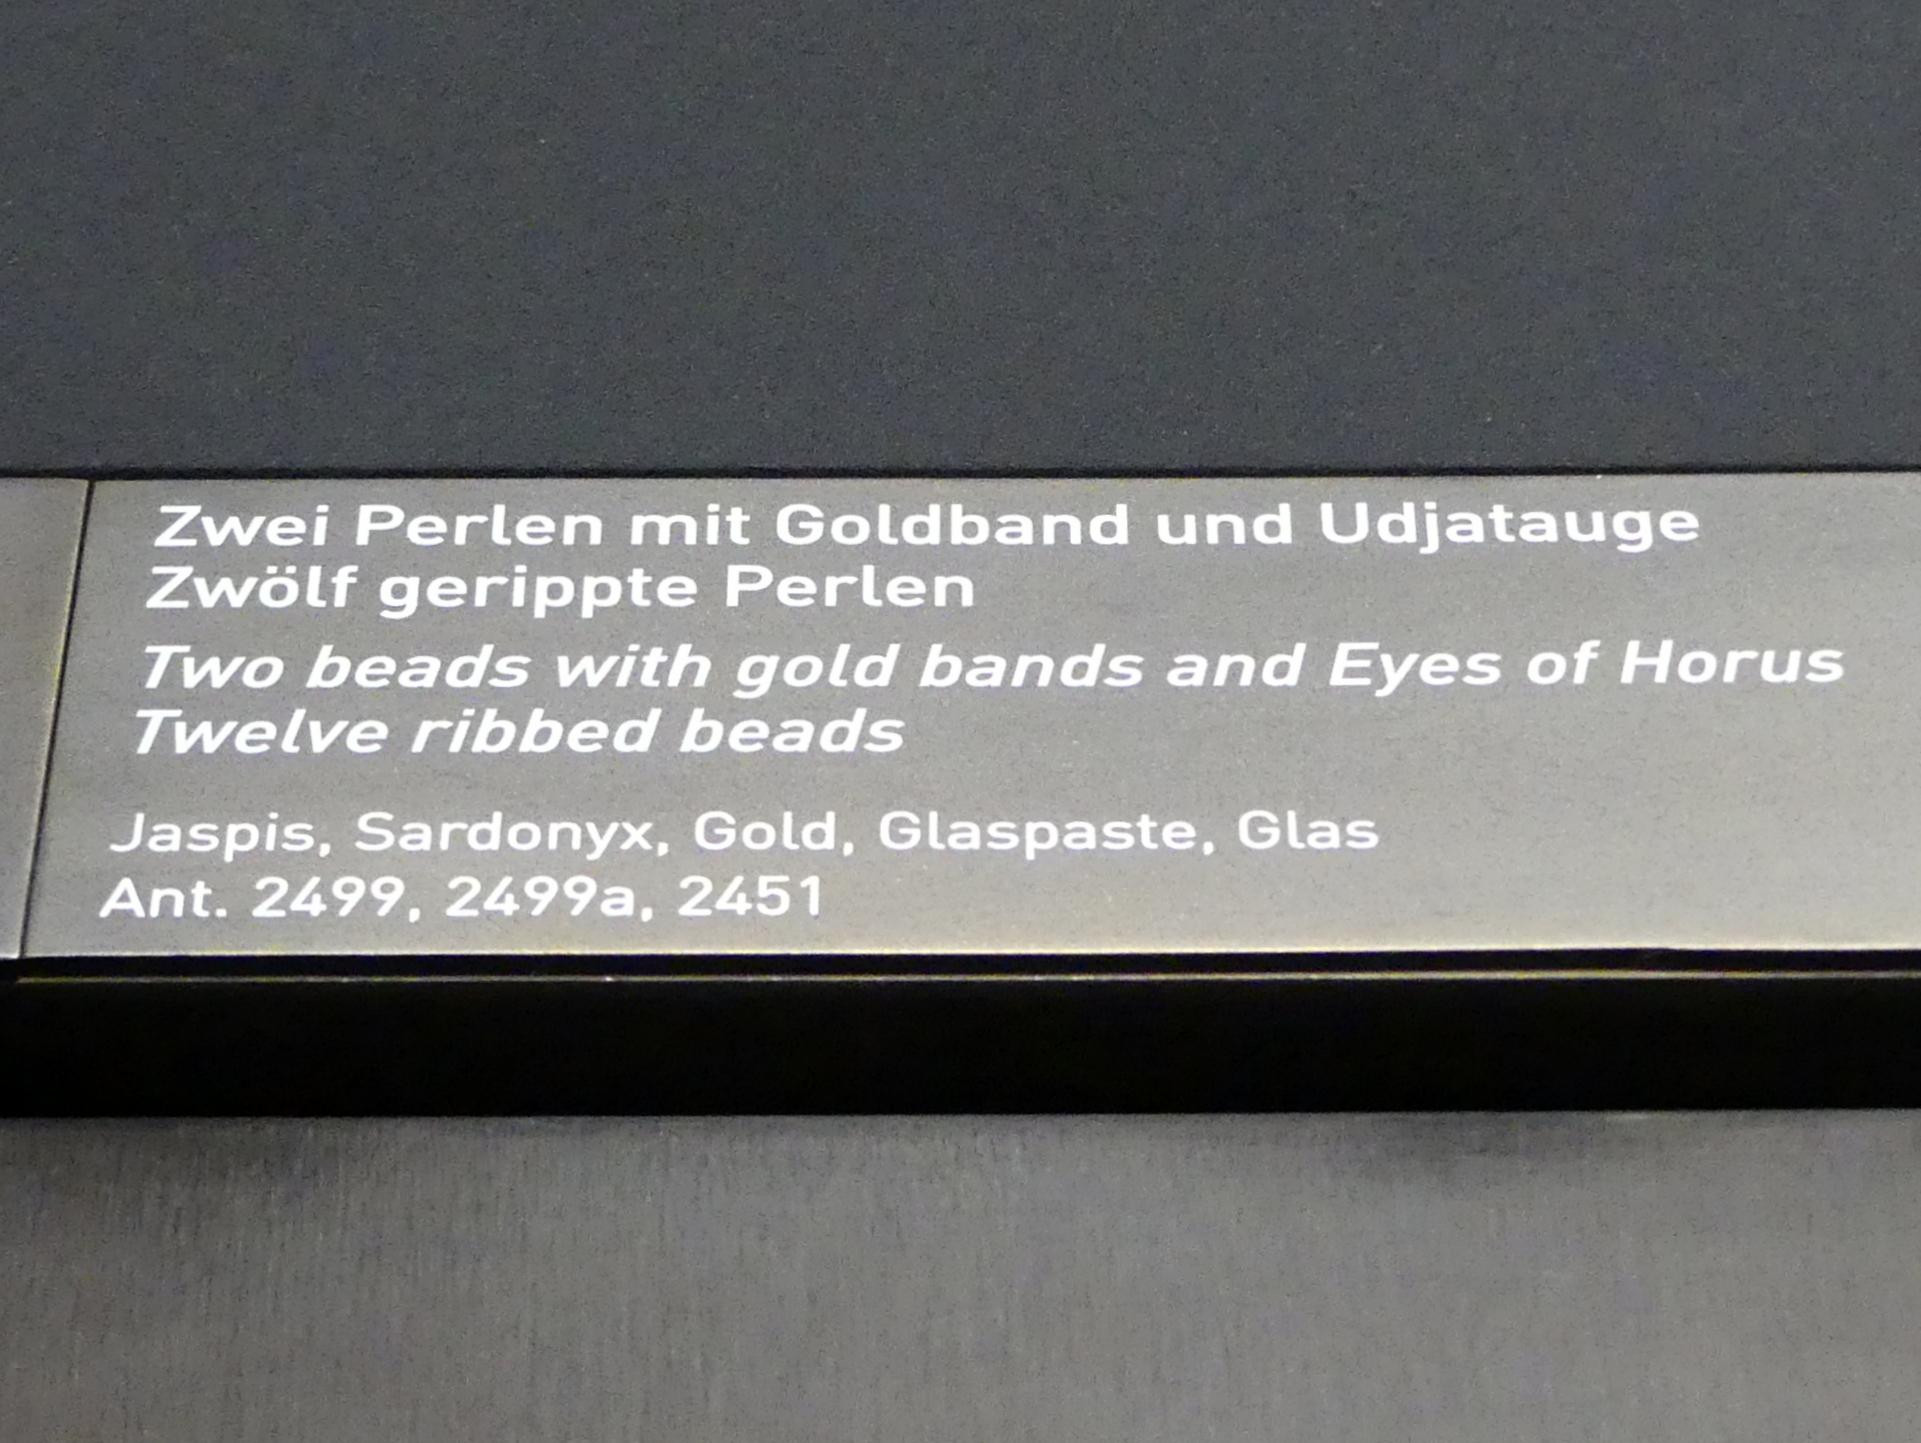 Zwei Perlen mit Goldband und Udjat-Auge, Undatiert, Bild 2/2